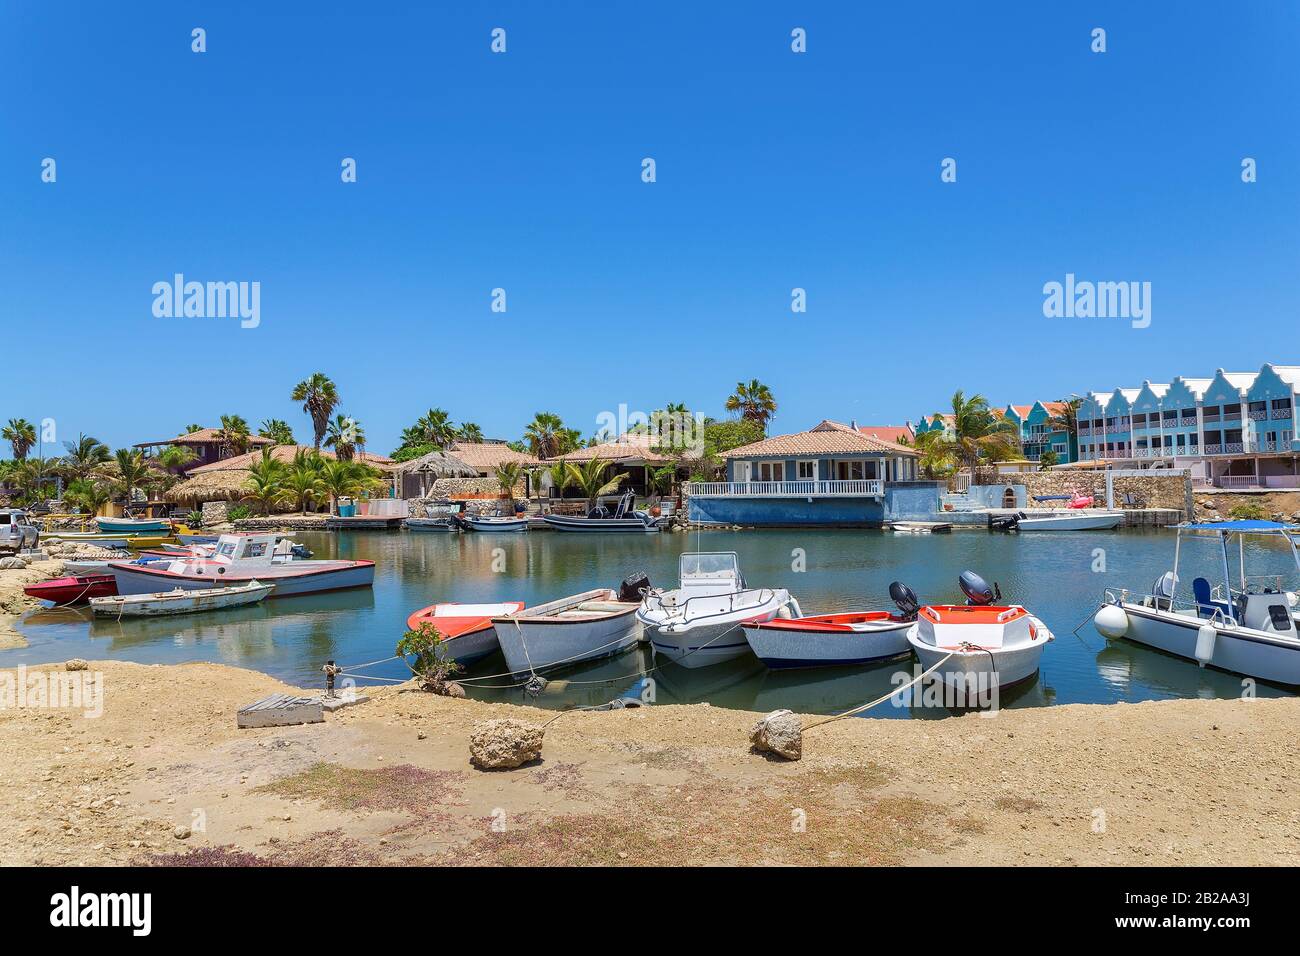 Petit port avec bateaux à moteur et maisons sur l'île Bonaire Banque D'Images